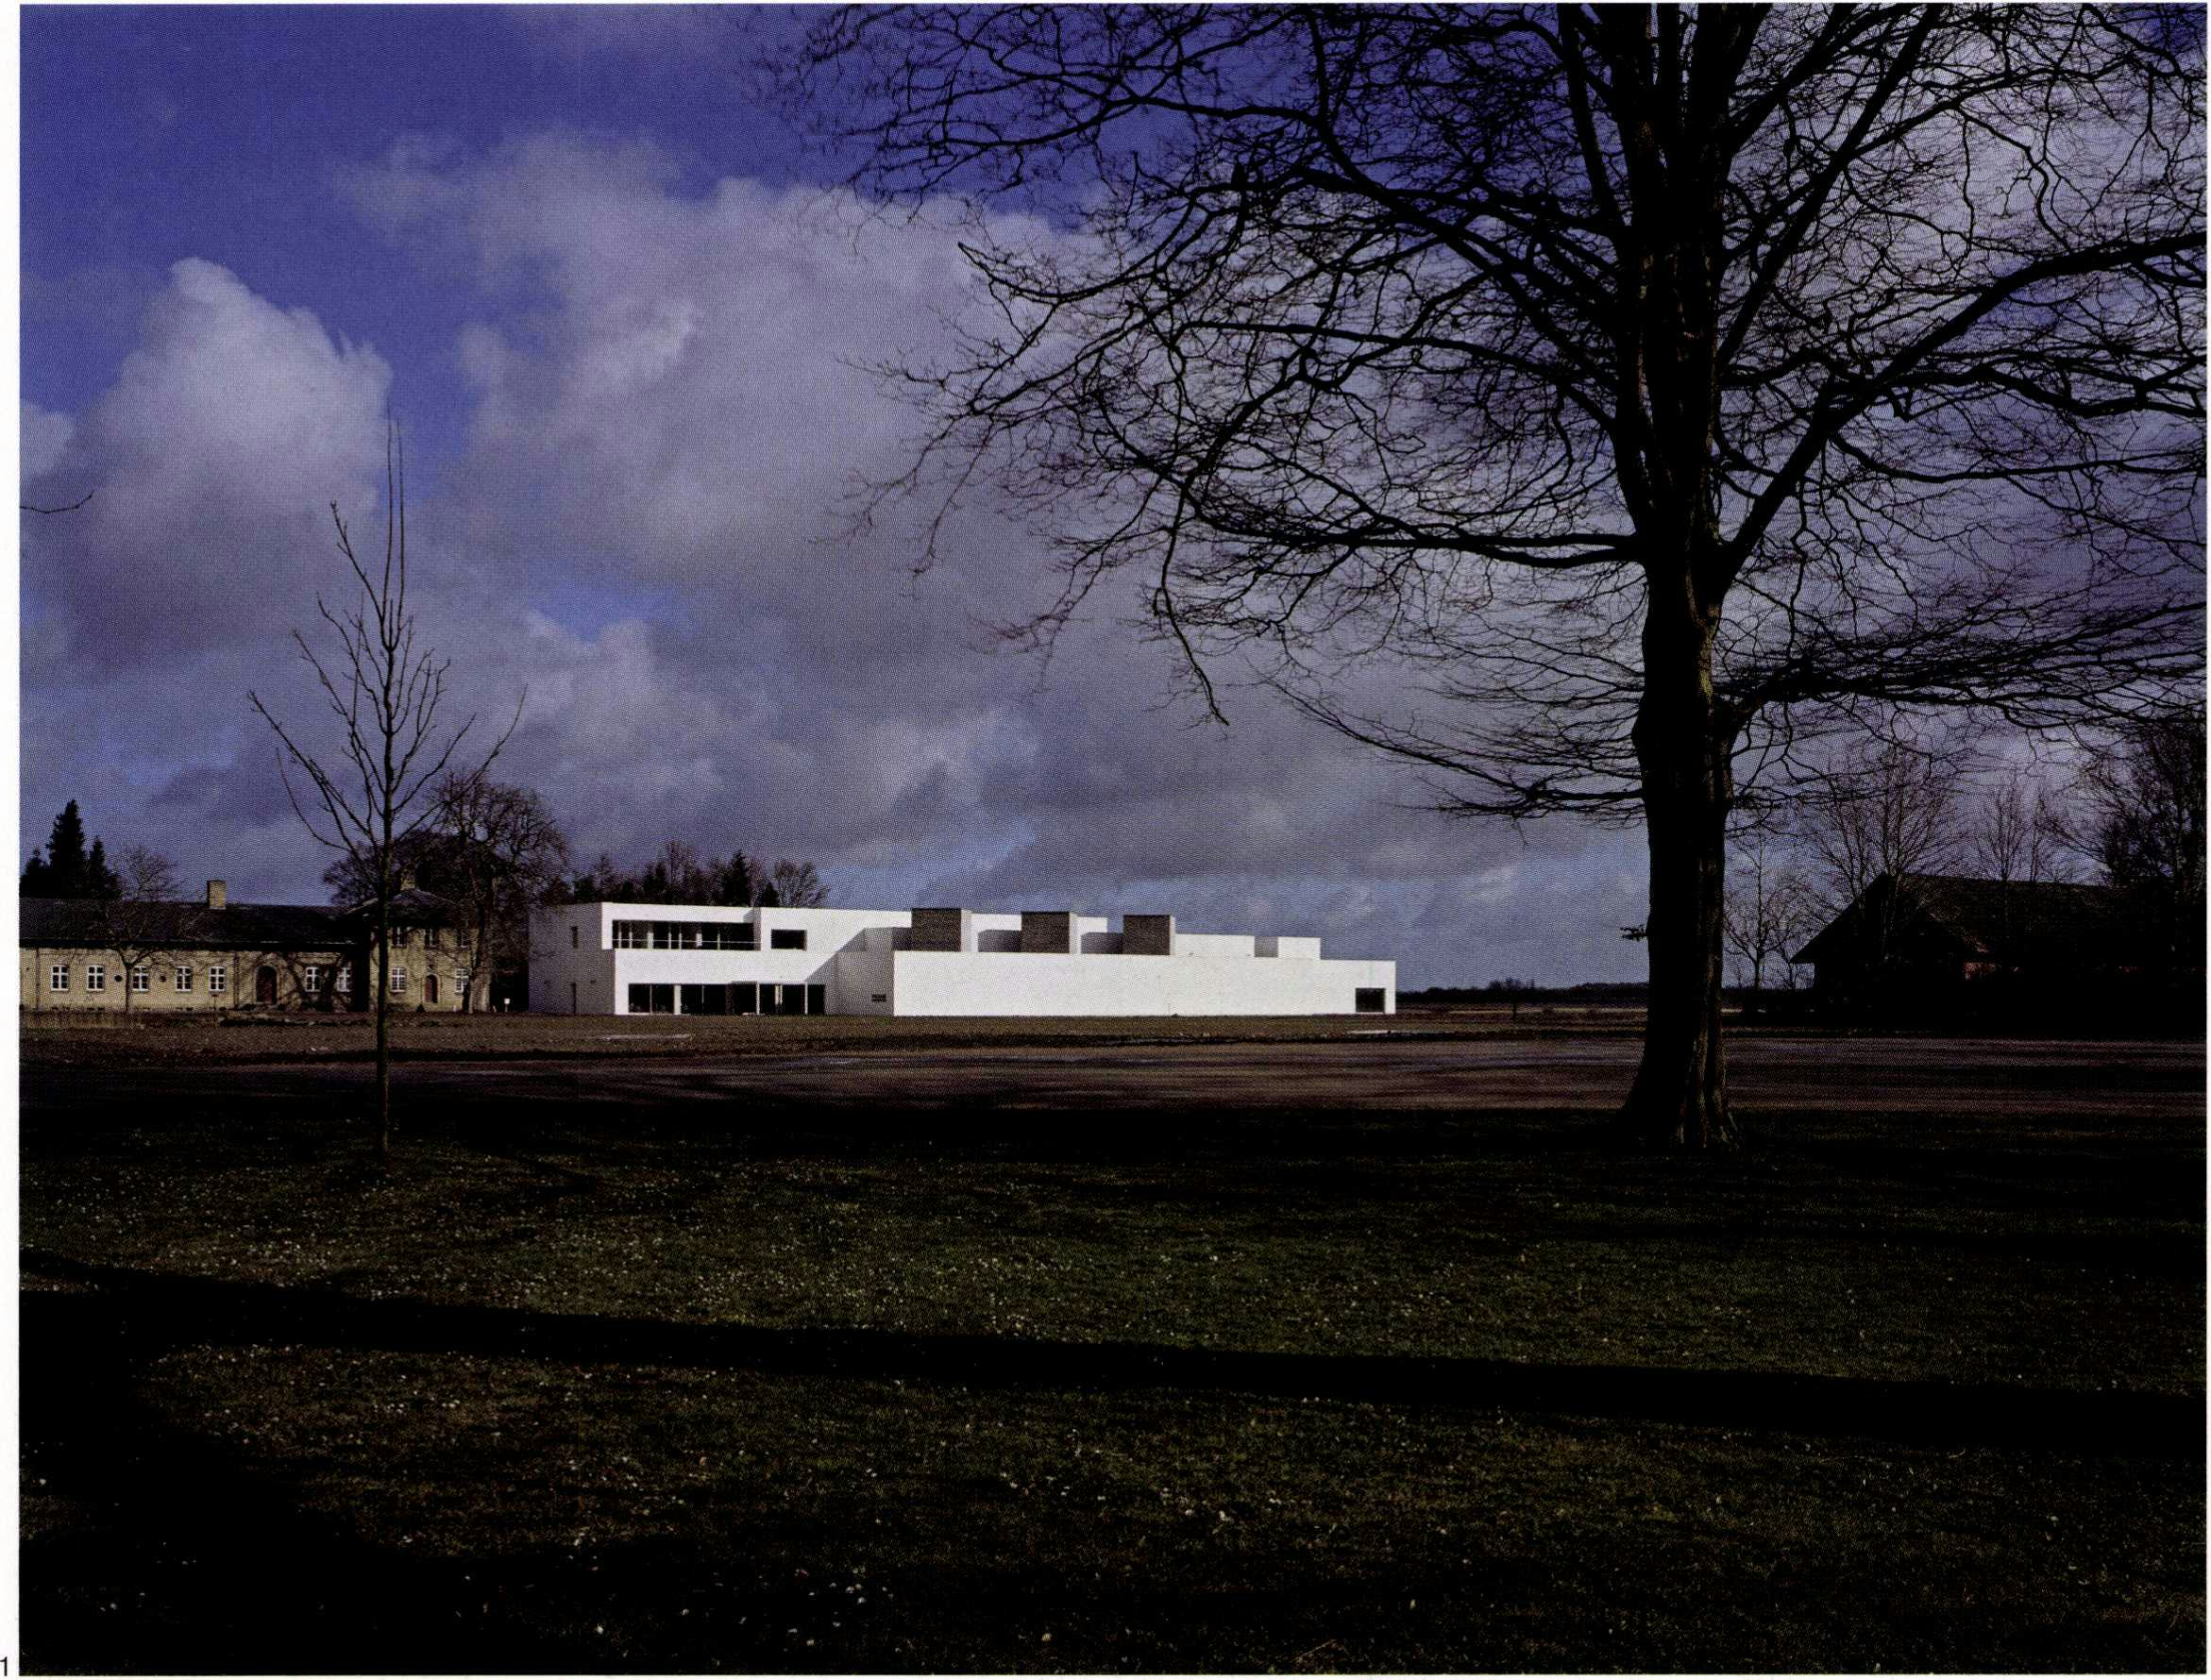 Het ontwerp van Fretton voor het Fuglsang Kunstmuseum vindt door zijn schaal en horizontale geleding aansluiting met het bestaande landhuis en het landschap - Beeld Helene Binet